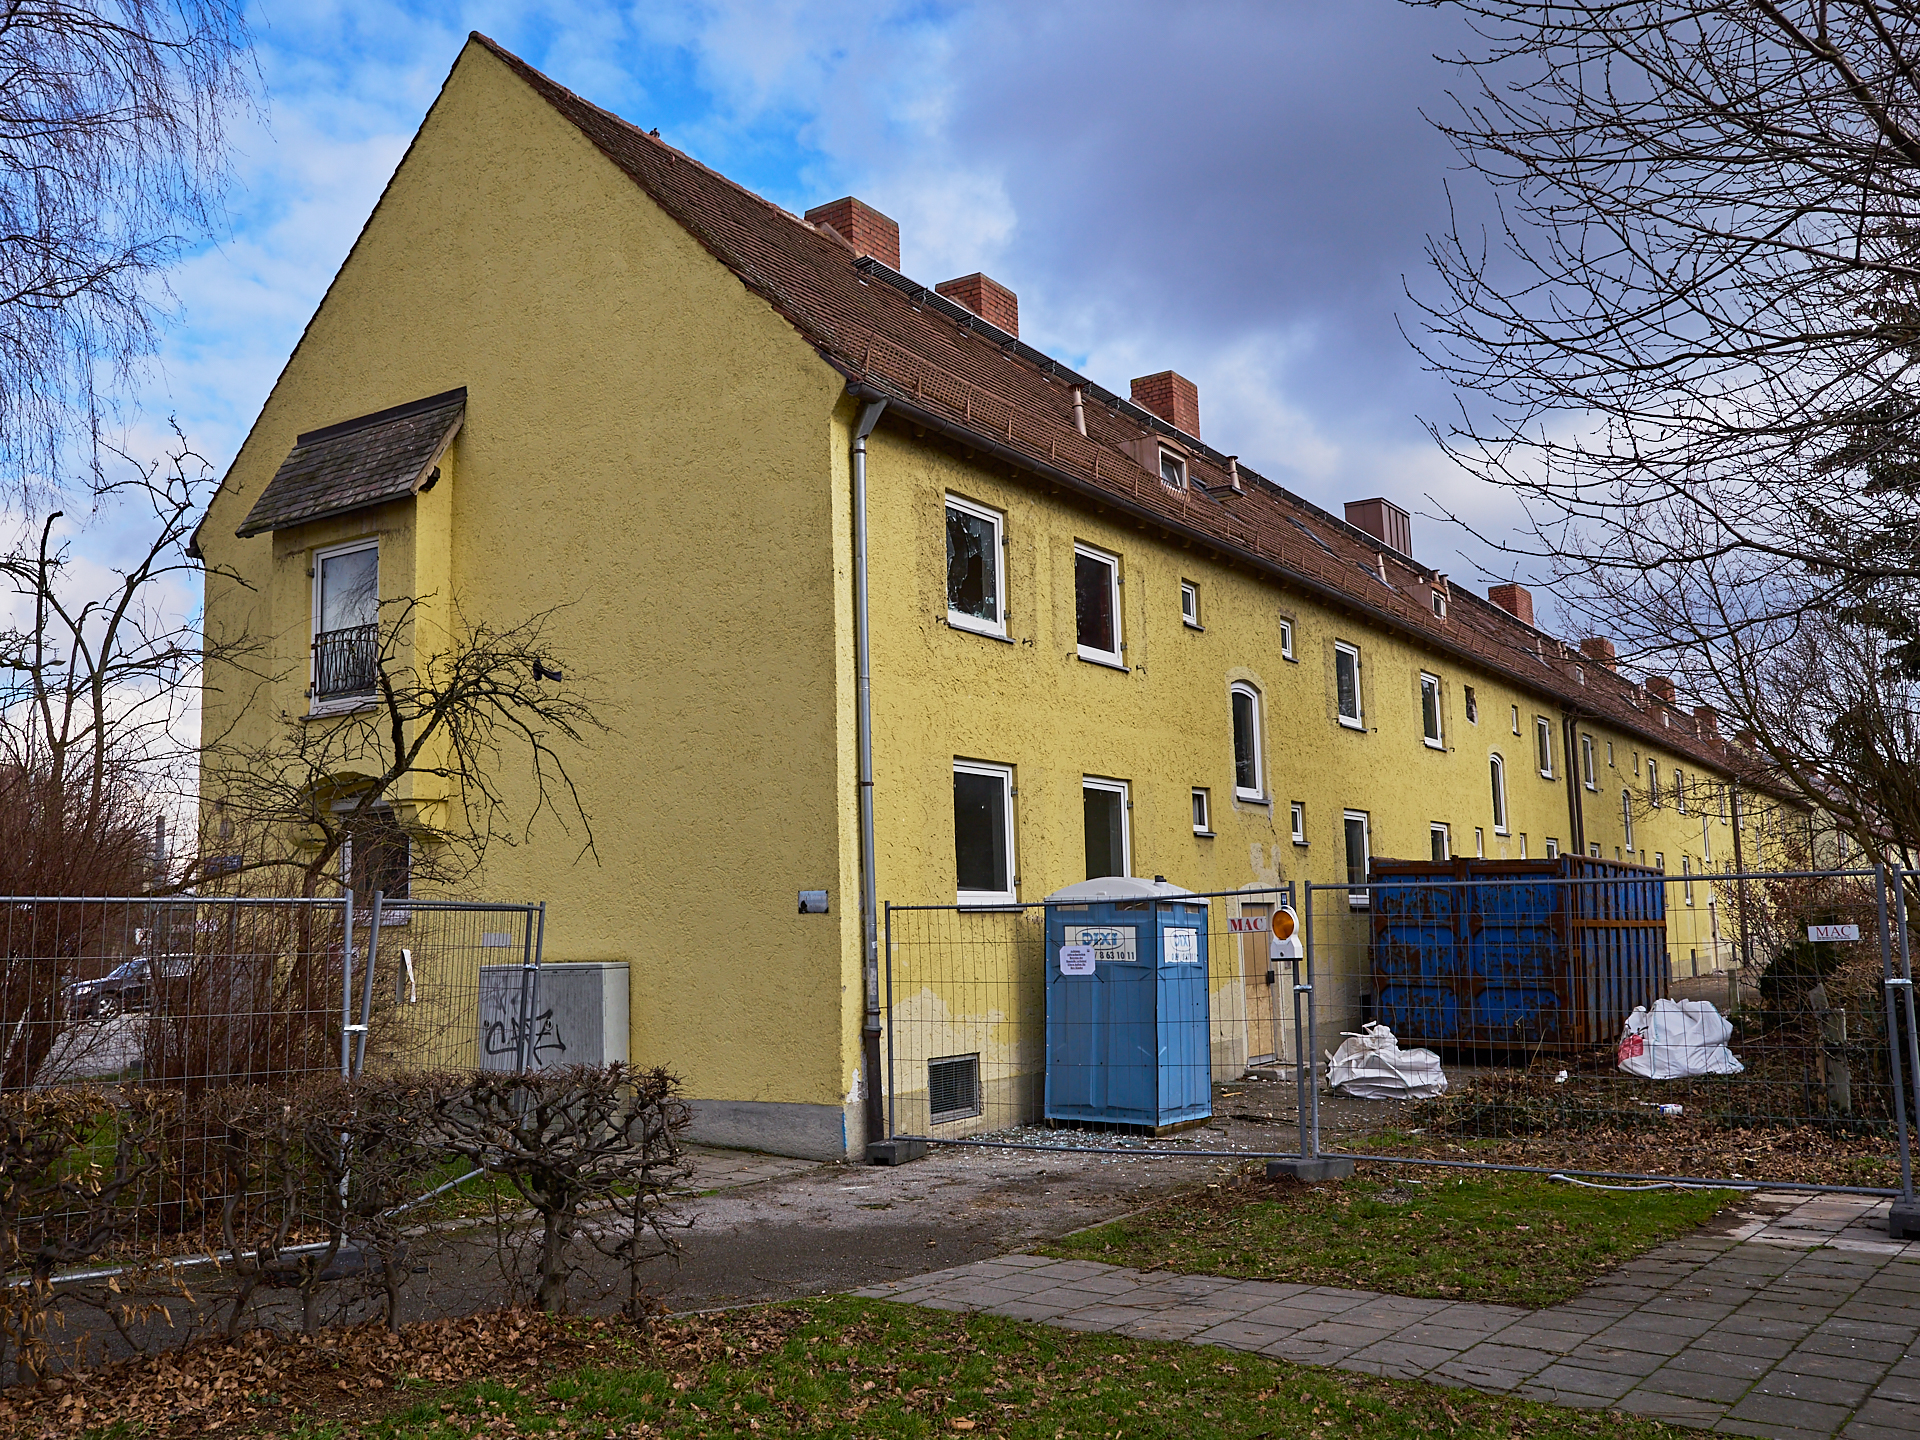 Neuperlach-maikaefersiedlung am 15-02-2016